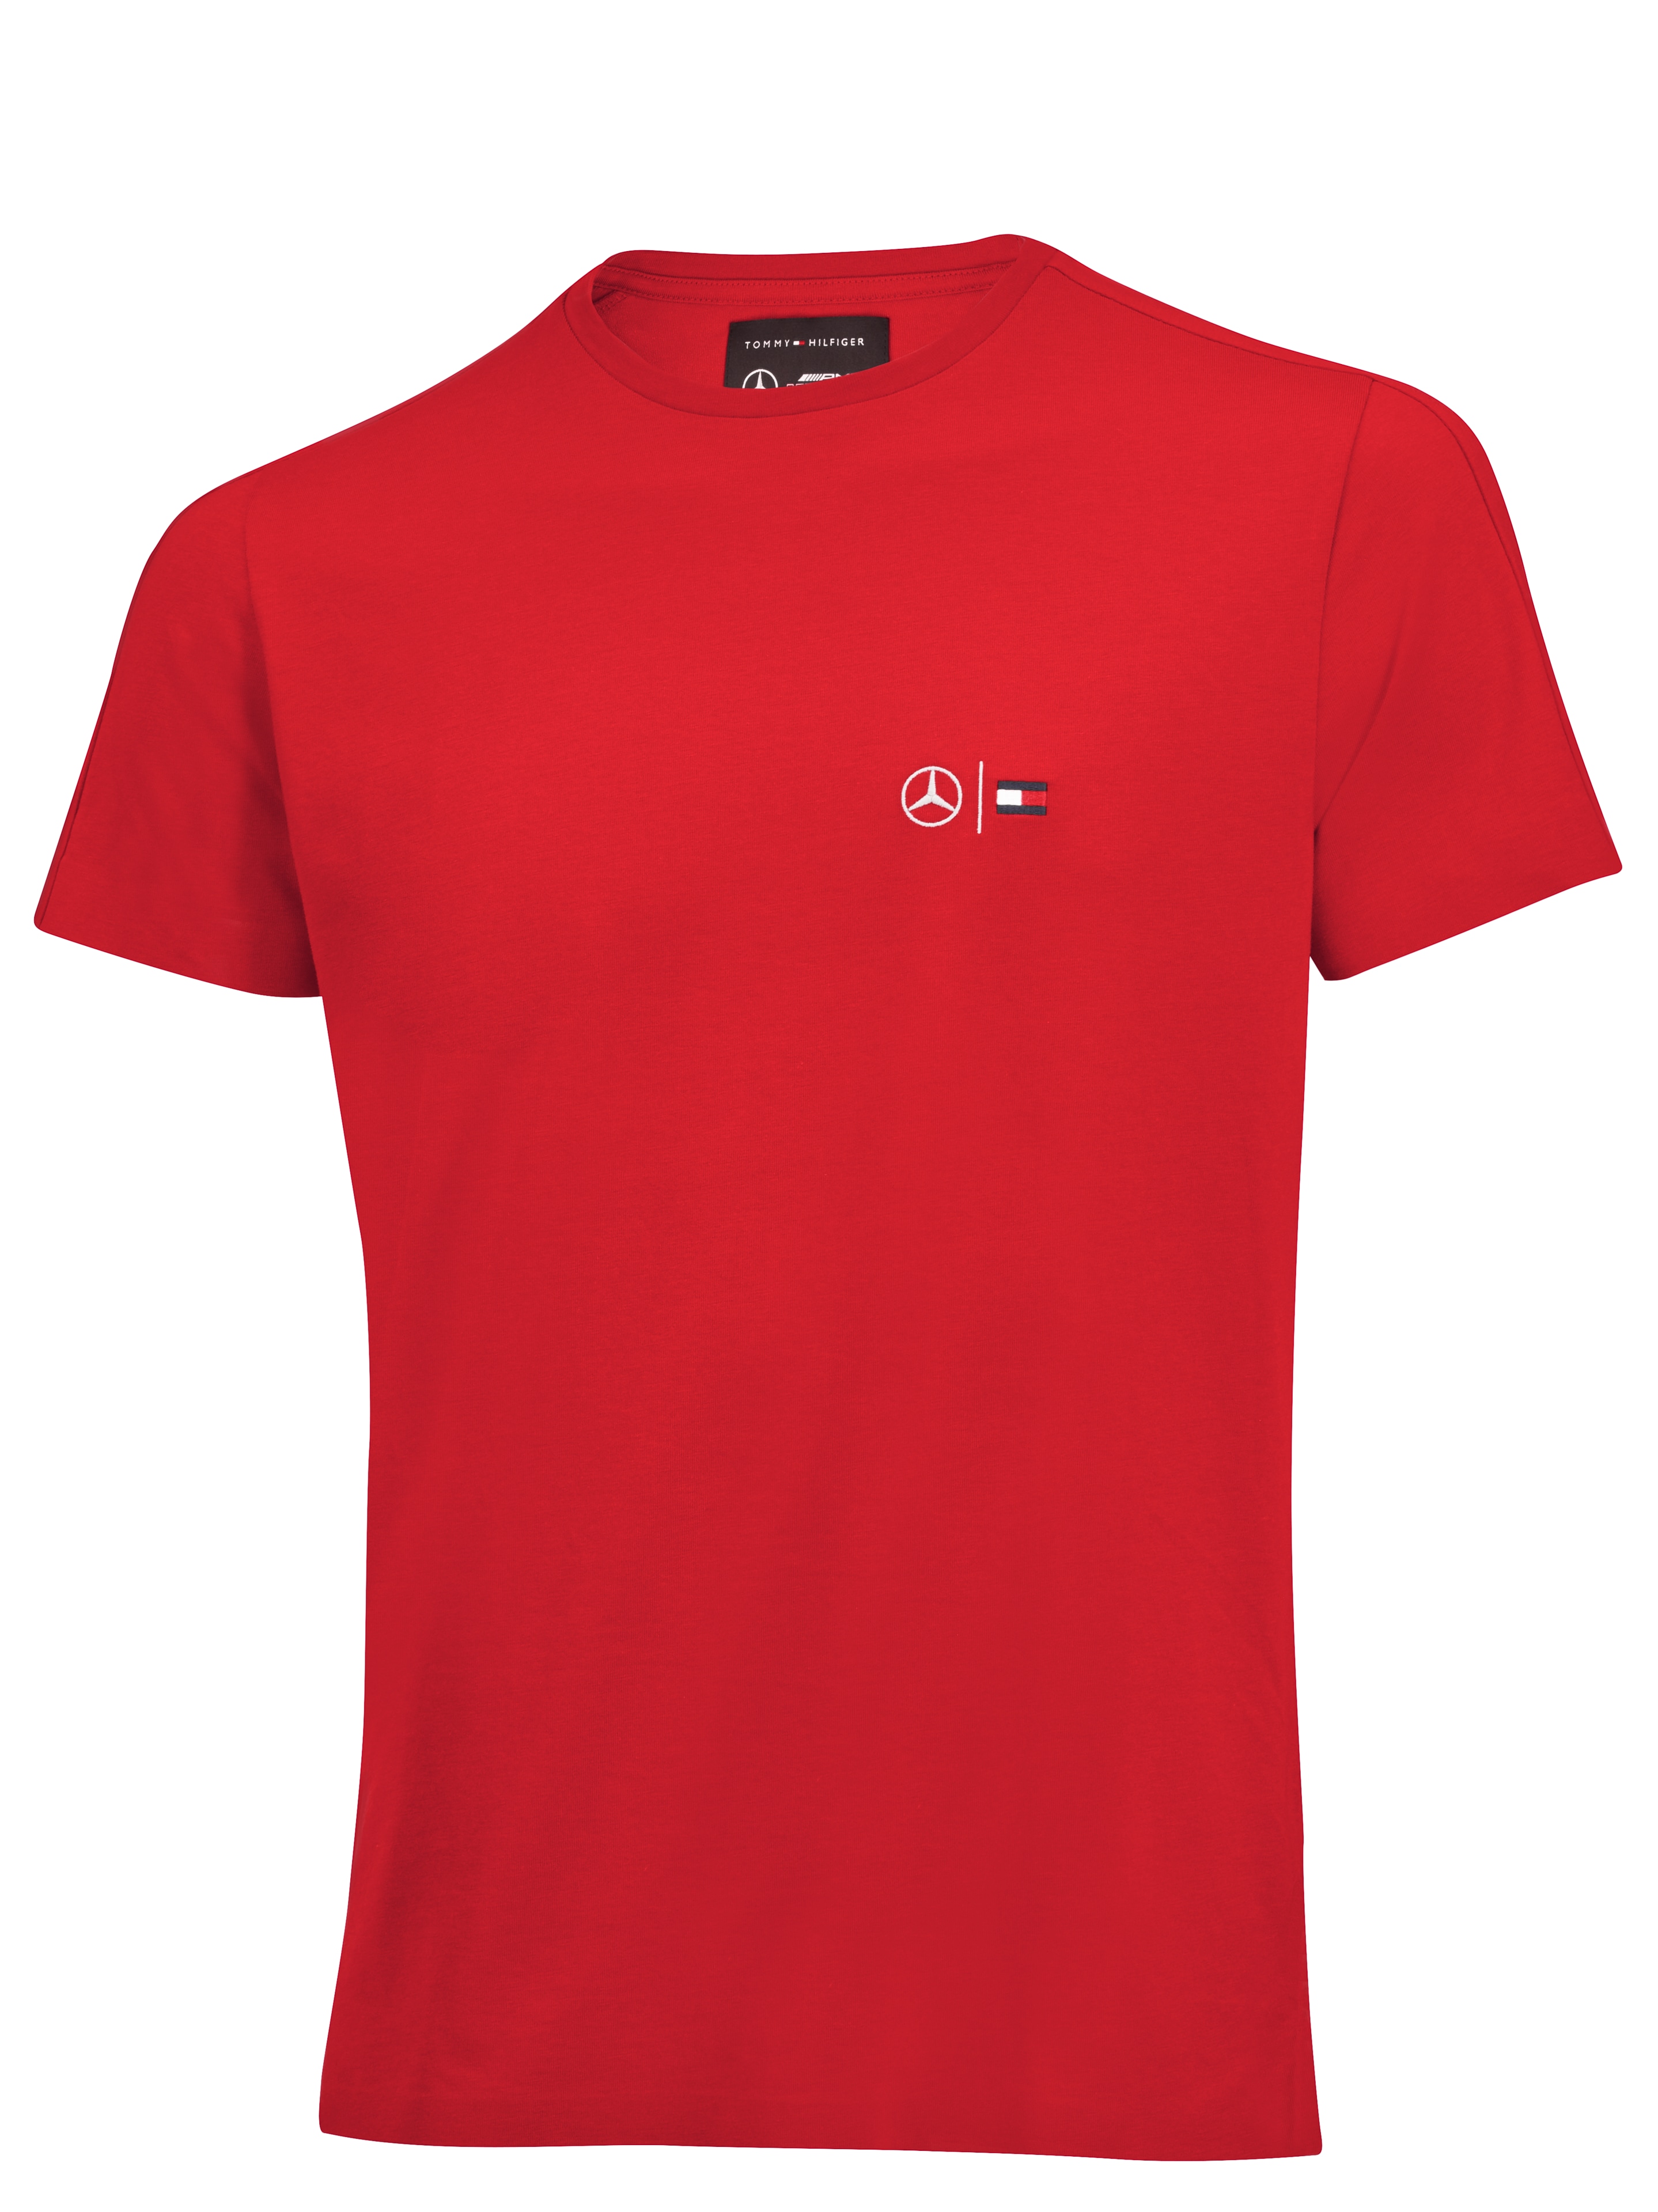 T-Shirt Herren - rot, XXL